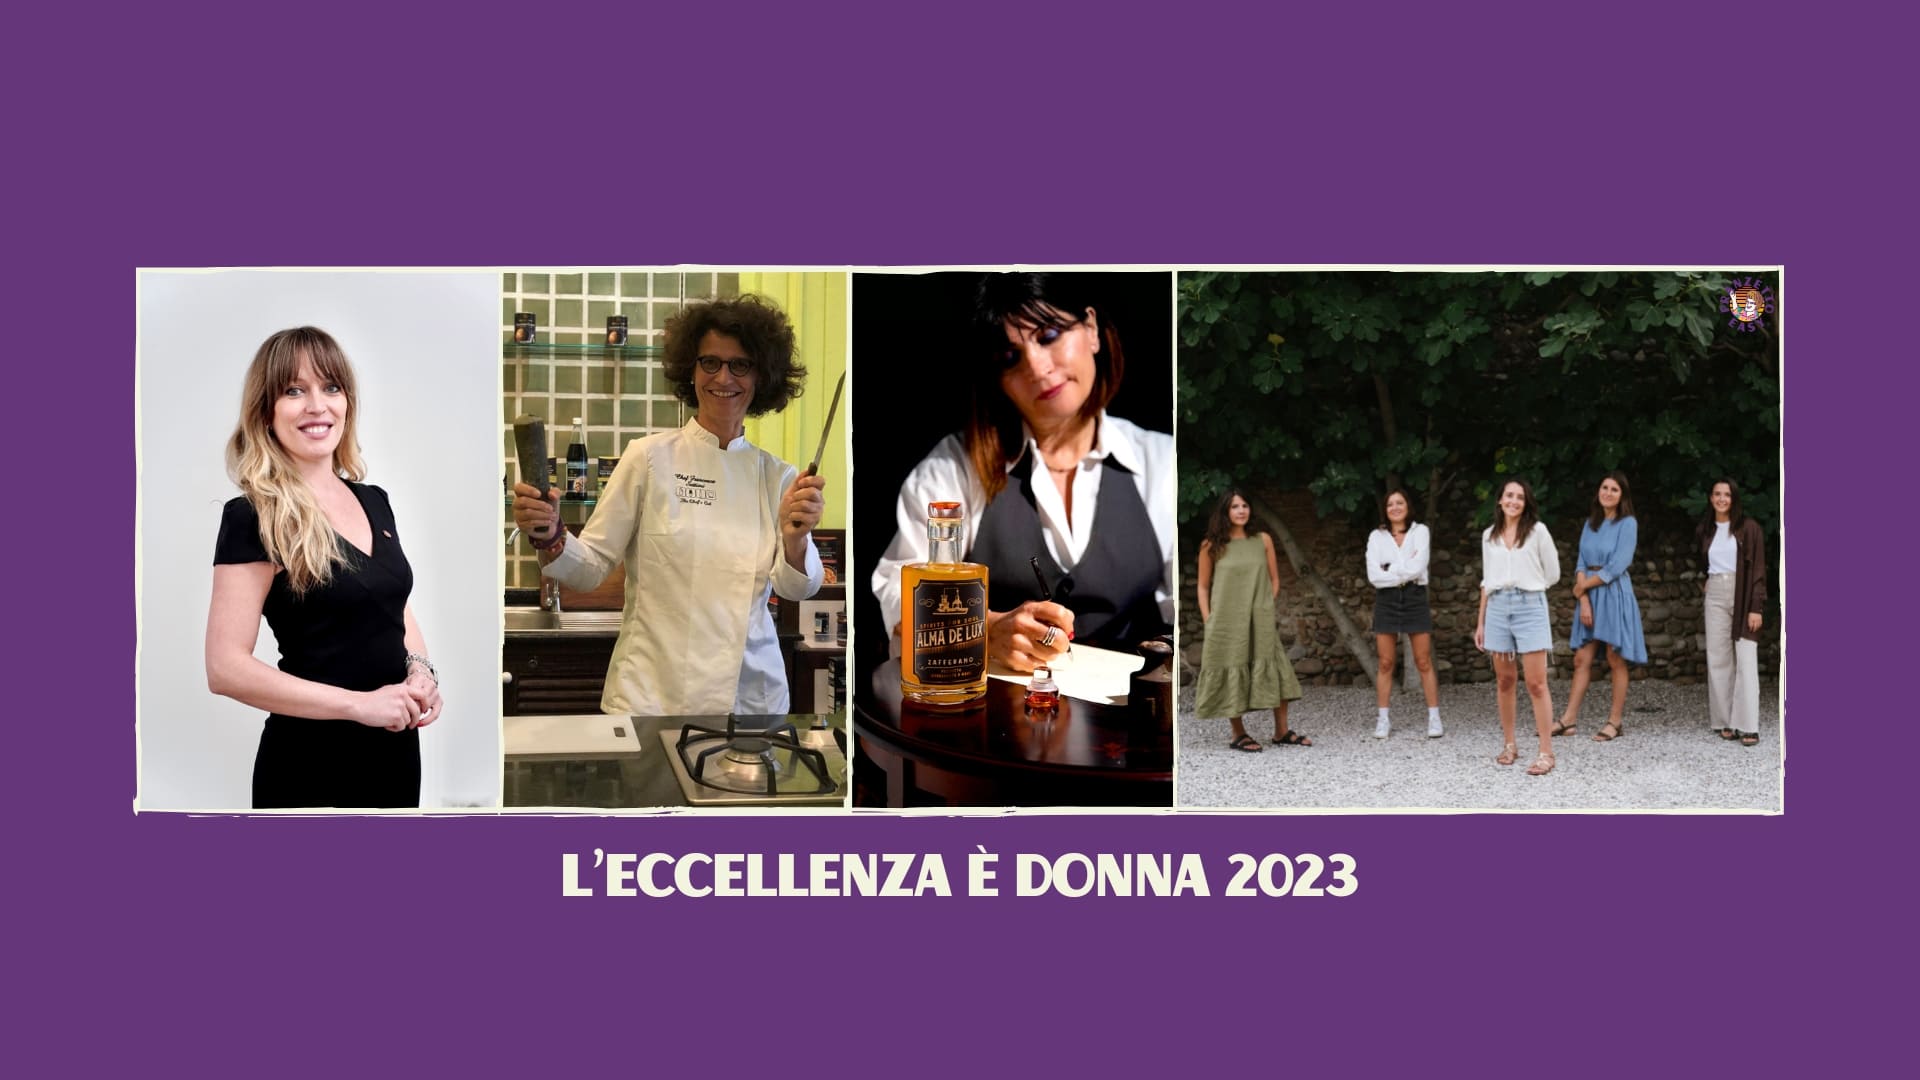 L'ECCELLENZA È DONNA 2023 by Pranzetto Easy (1).jpg